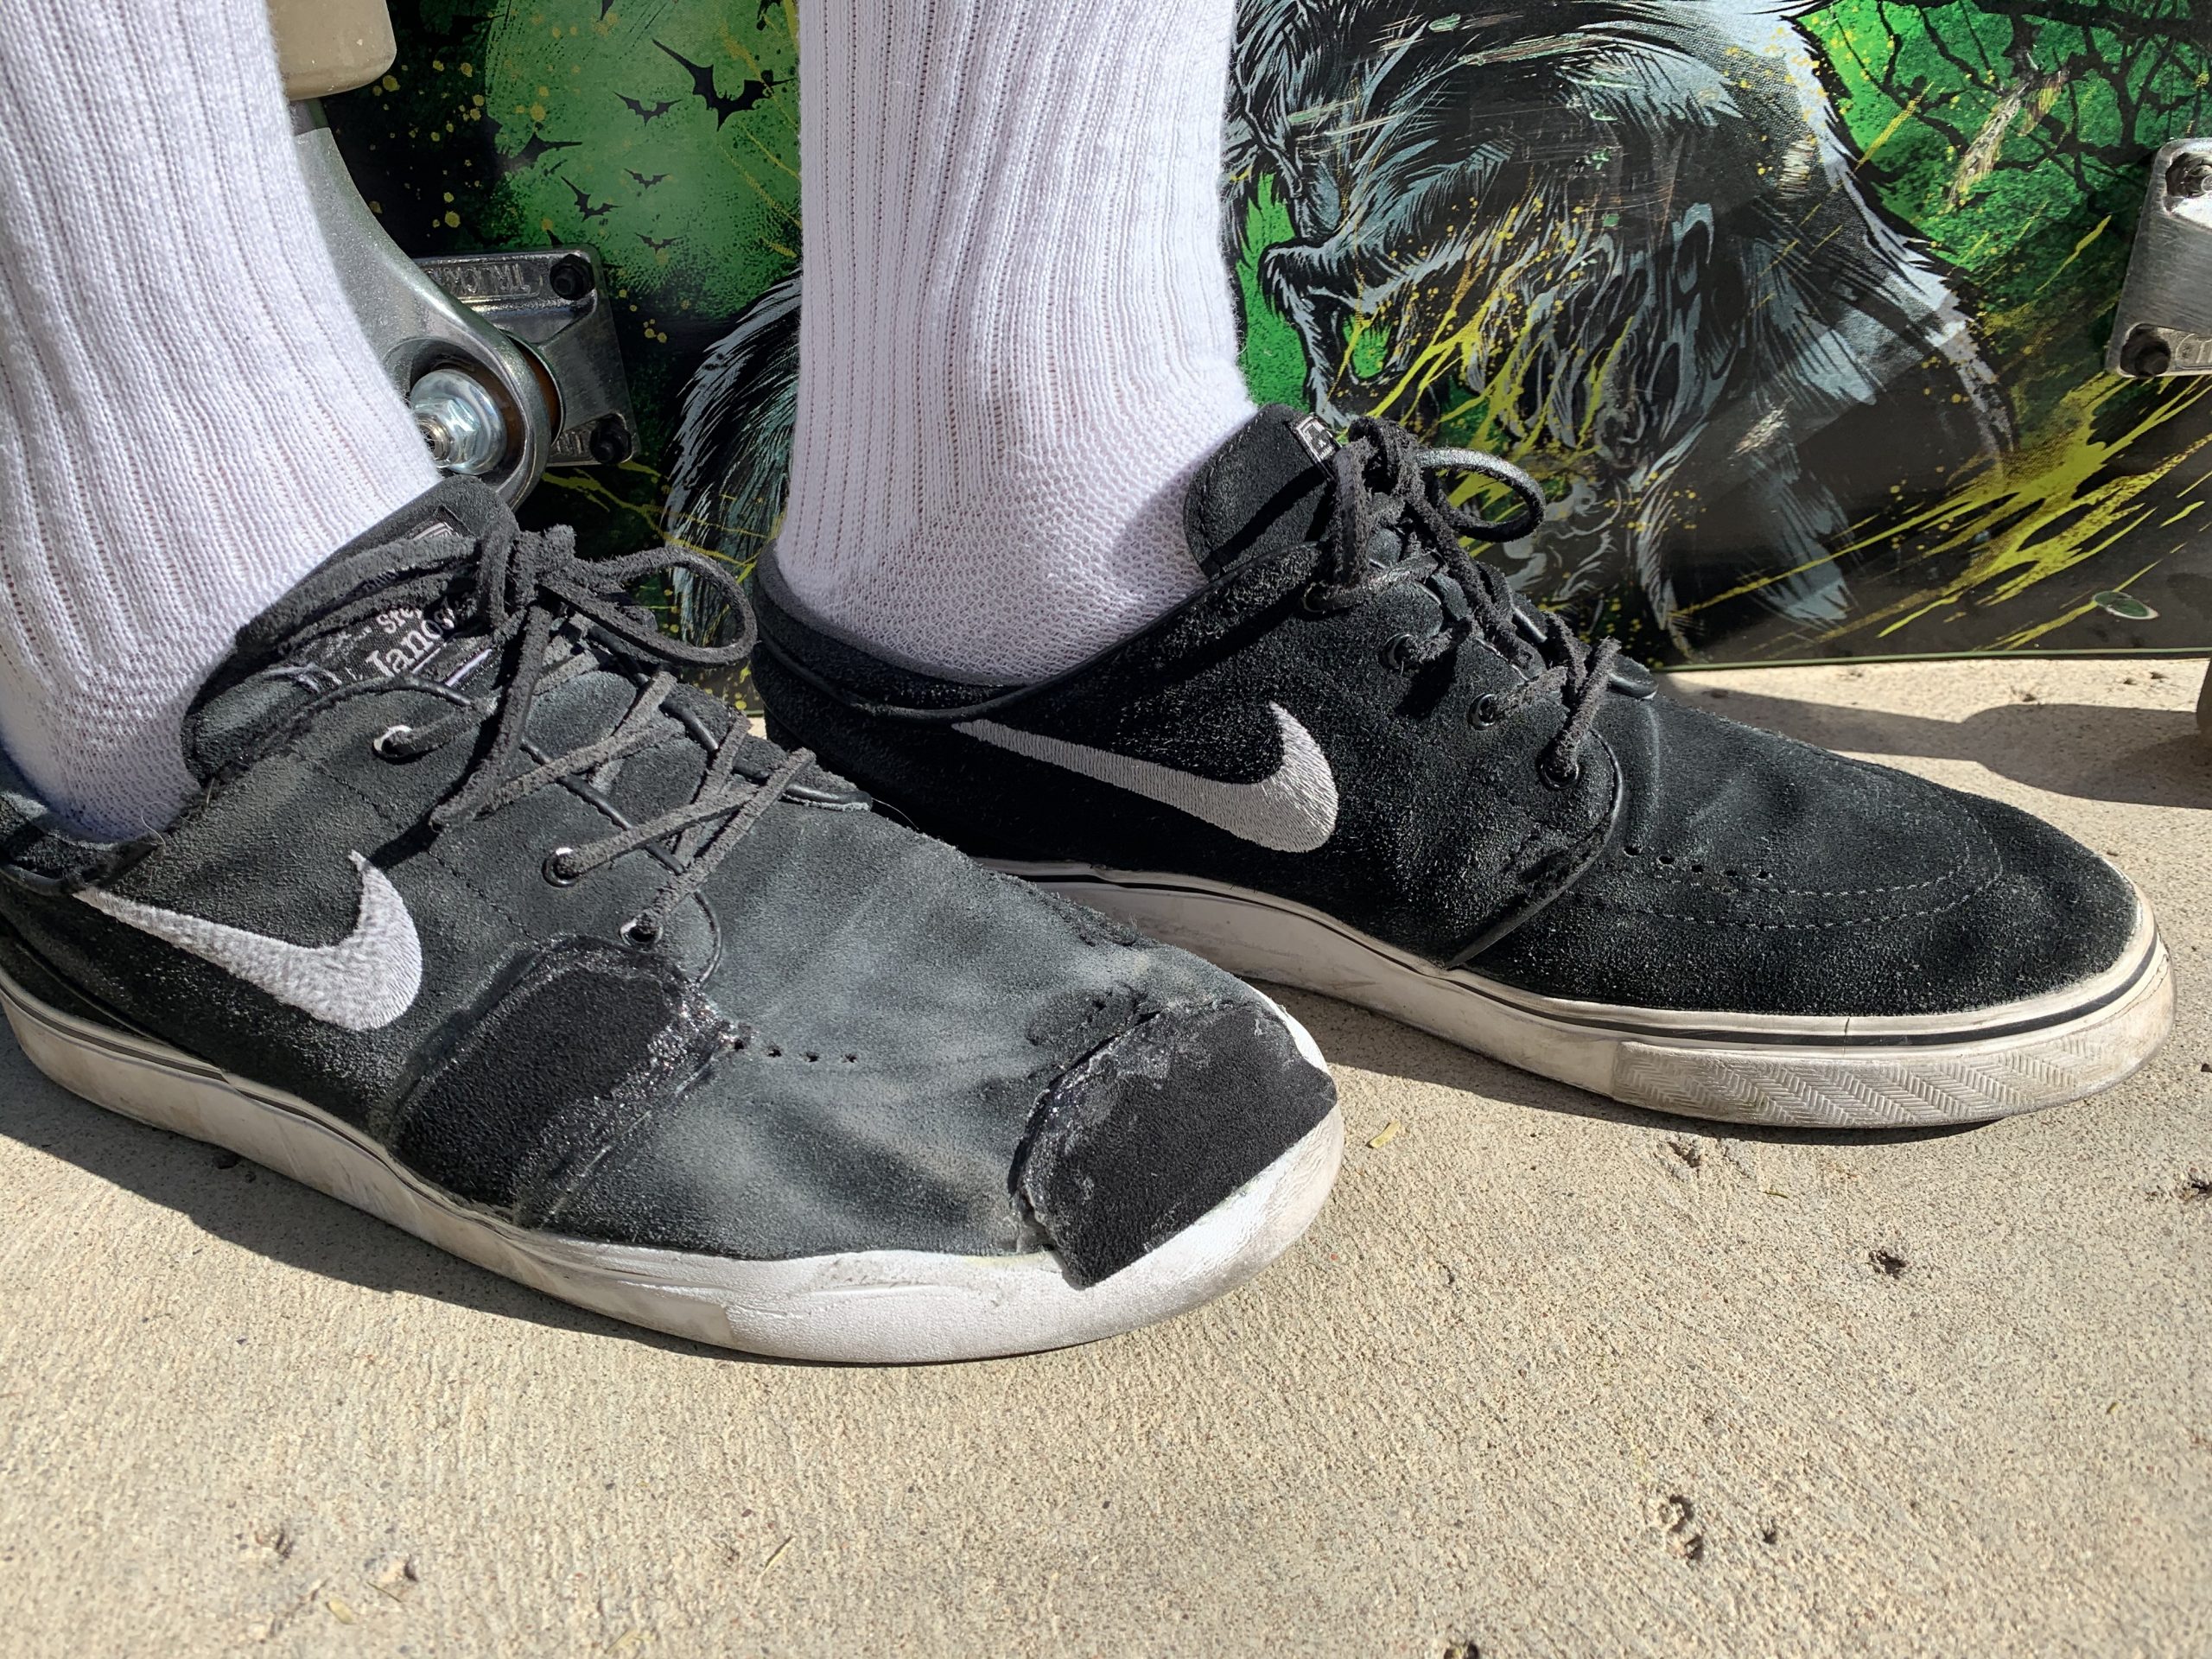 aankunnen moord hoogte TrickTape Adhesive Suede Patches – Easy Skateboard Shoe Repair